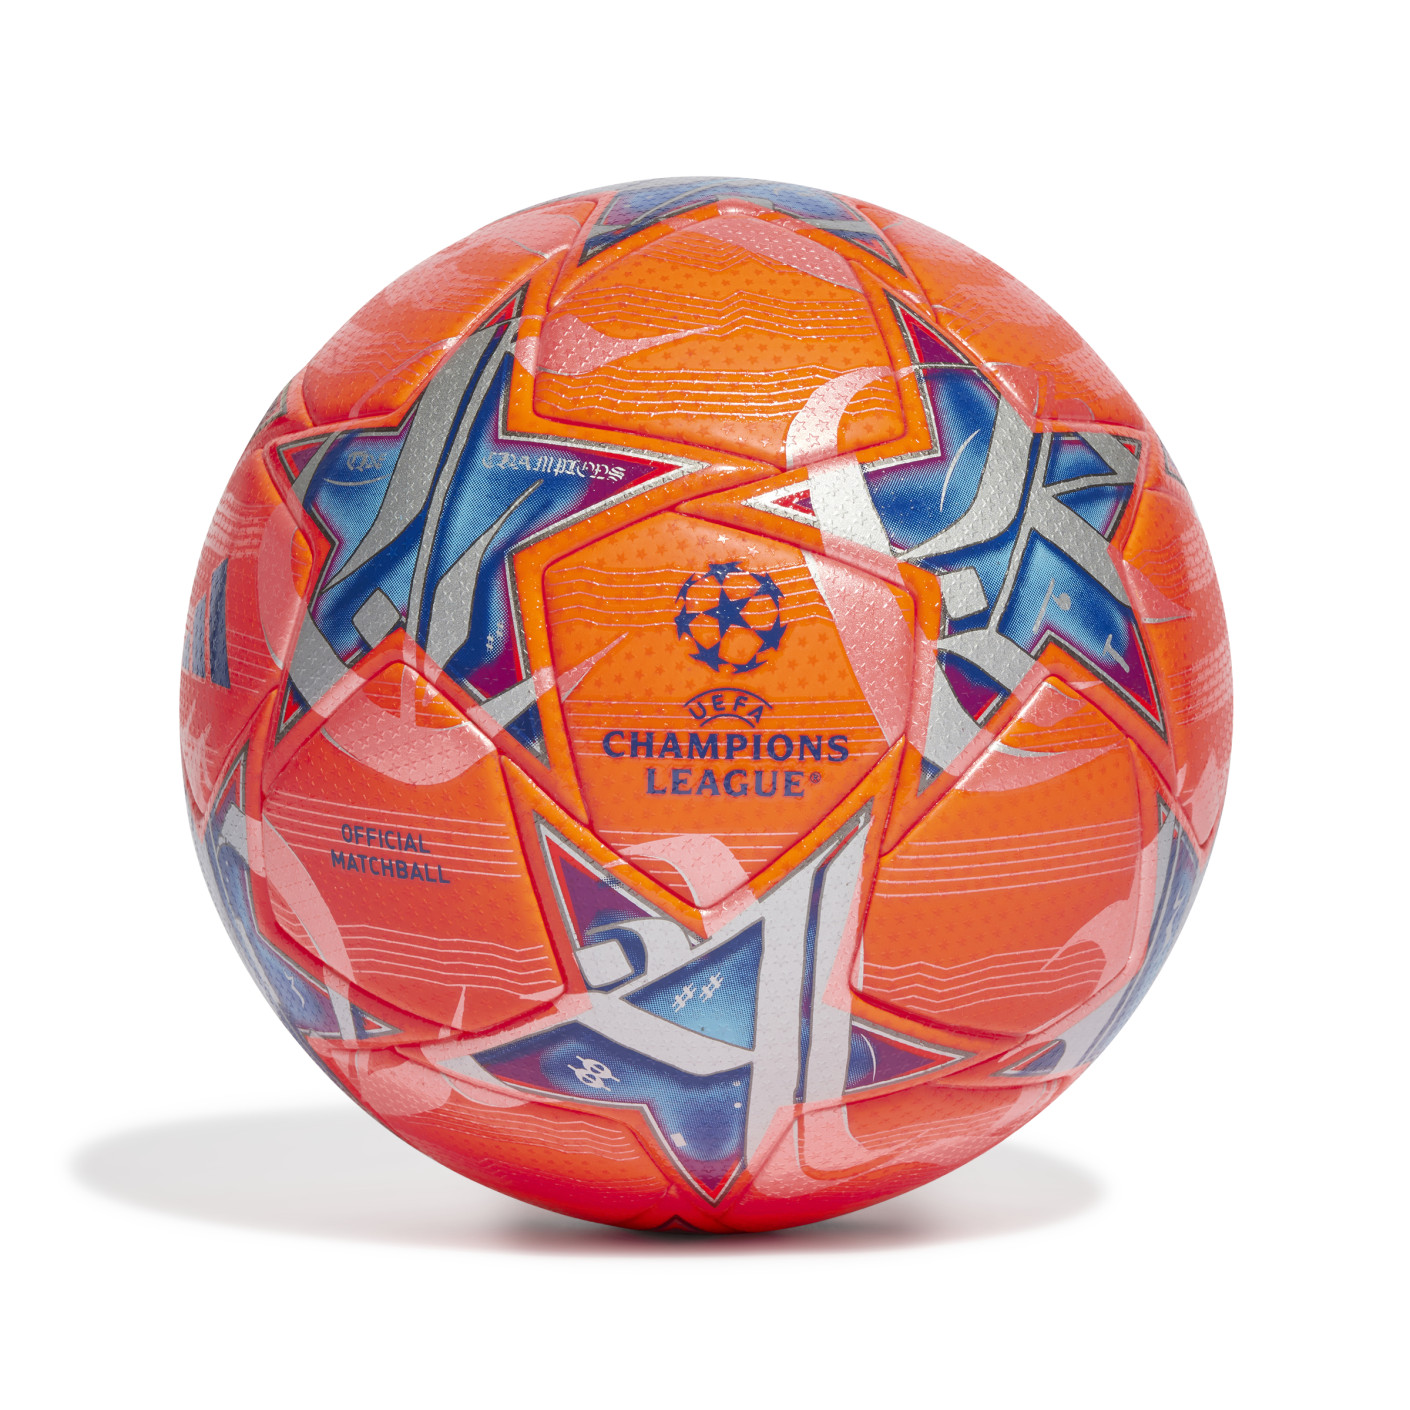 Voici le nouveau ballon de la Ligue des Champions !